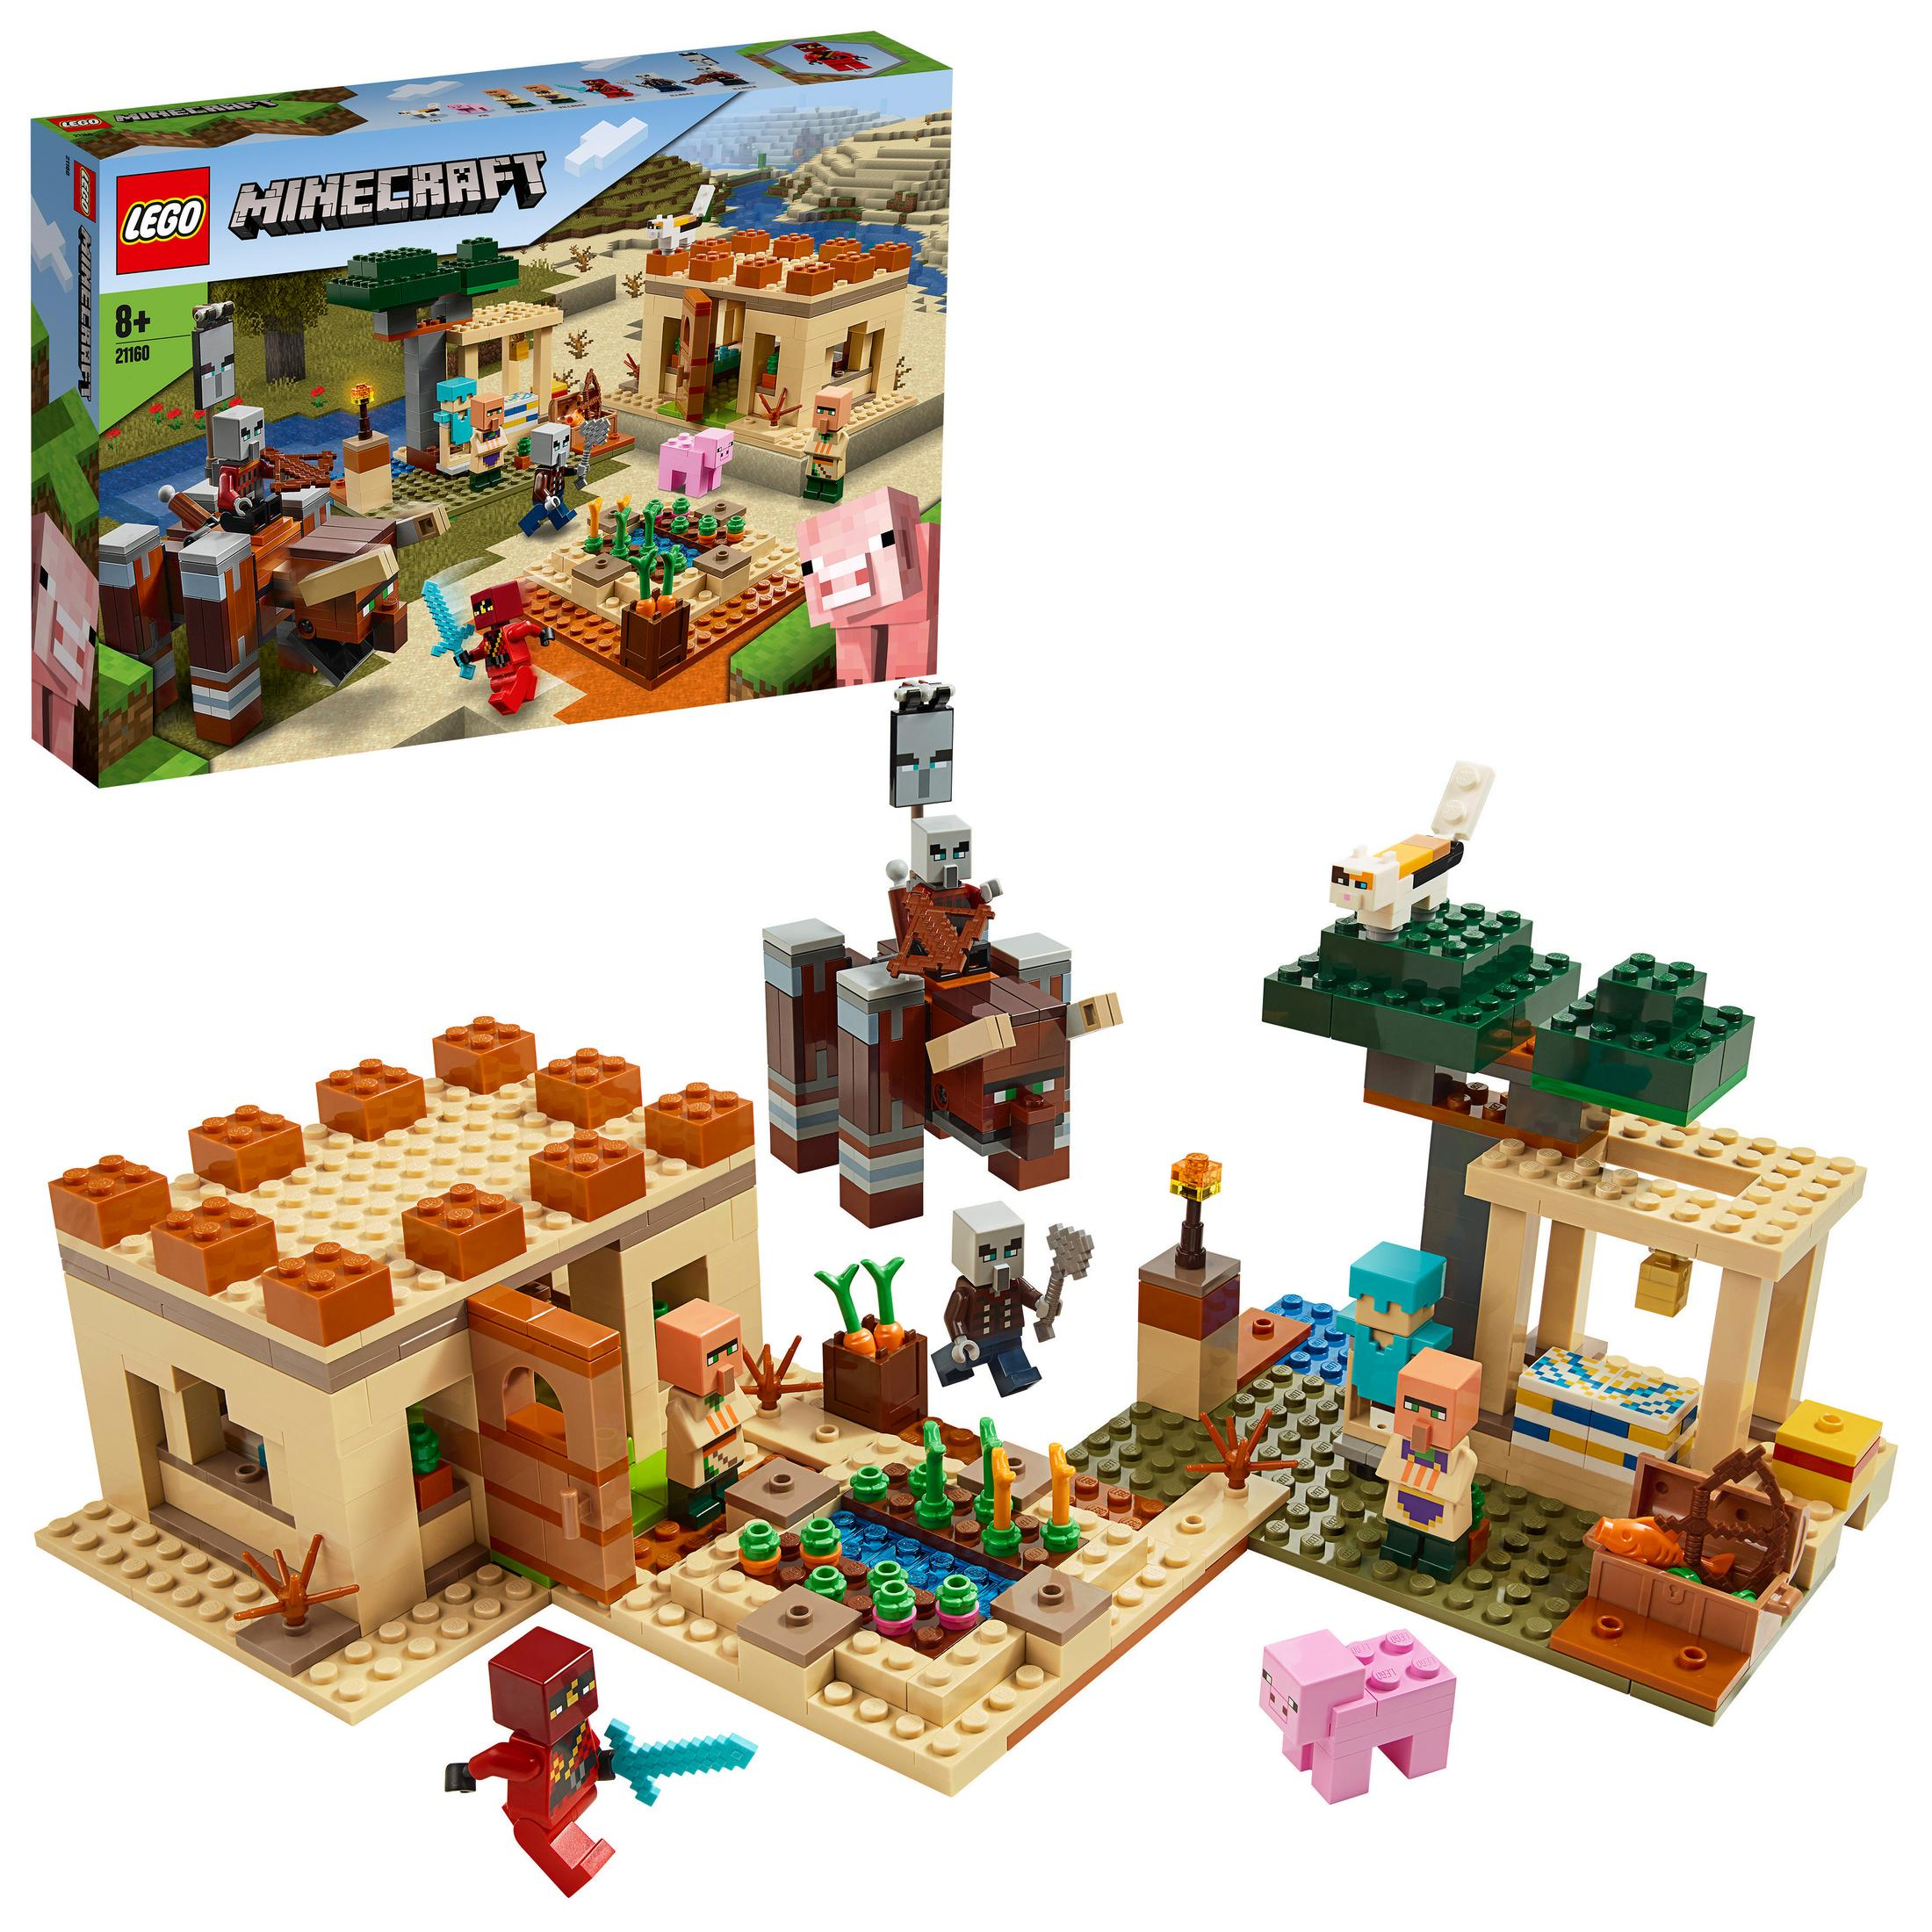 ILLAGER-ÜBERFALL 21160 Bausatz, Mehrfarbig DER LEGO